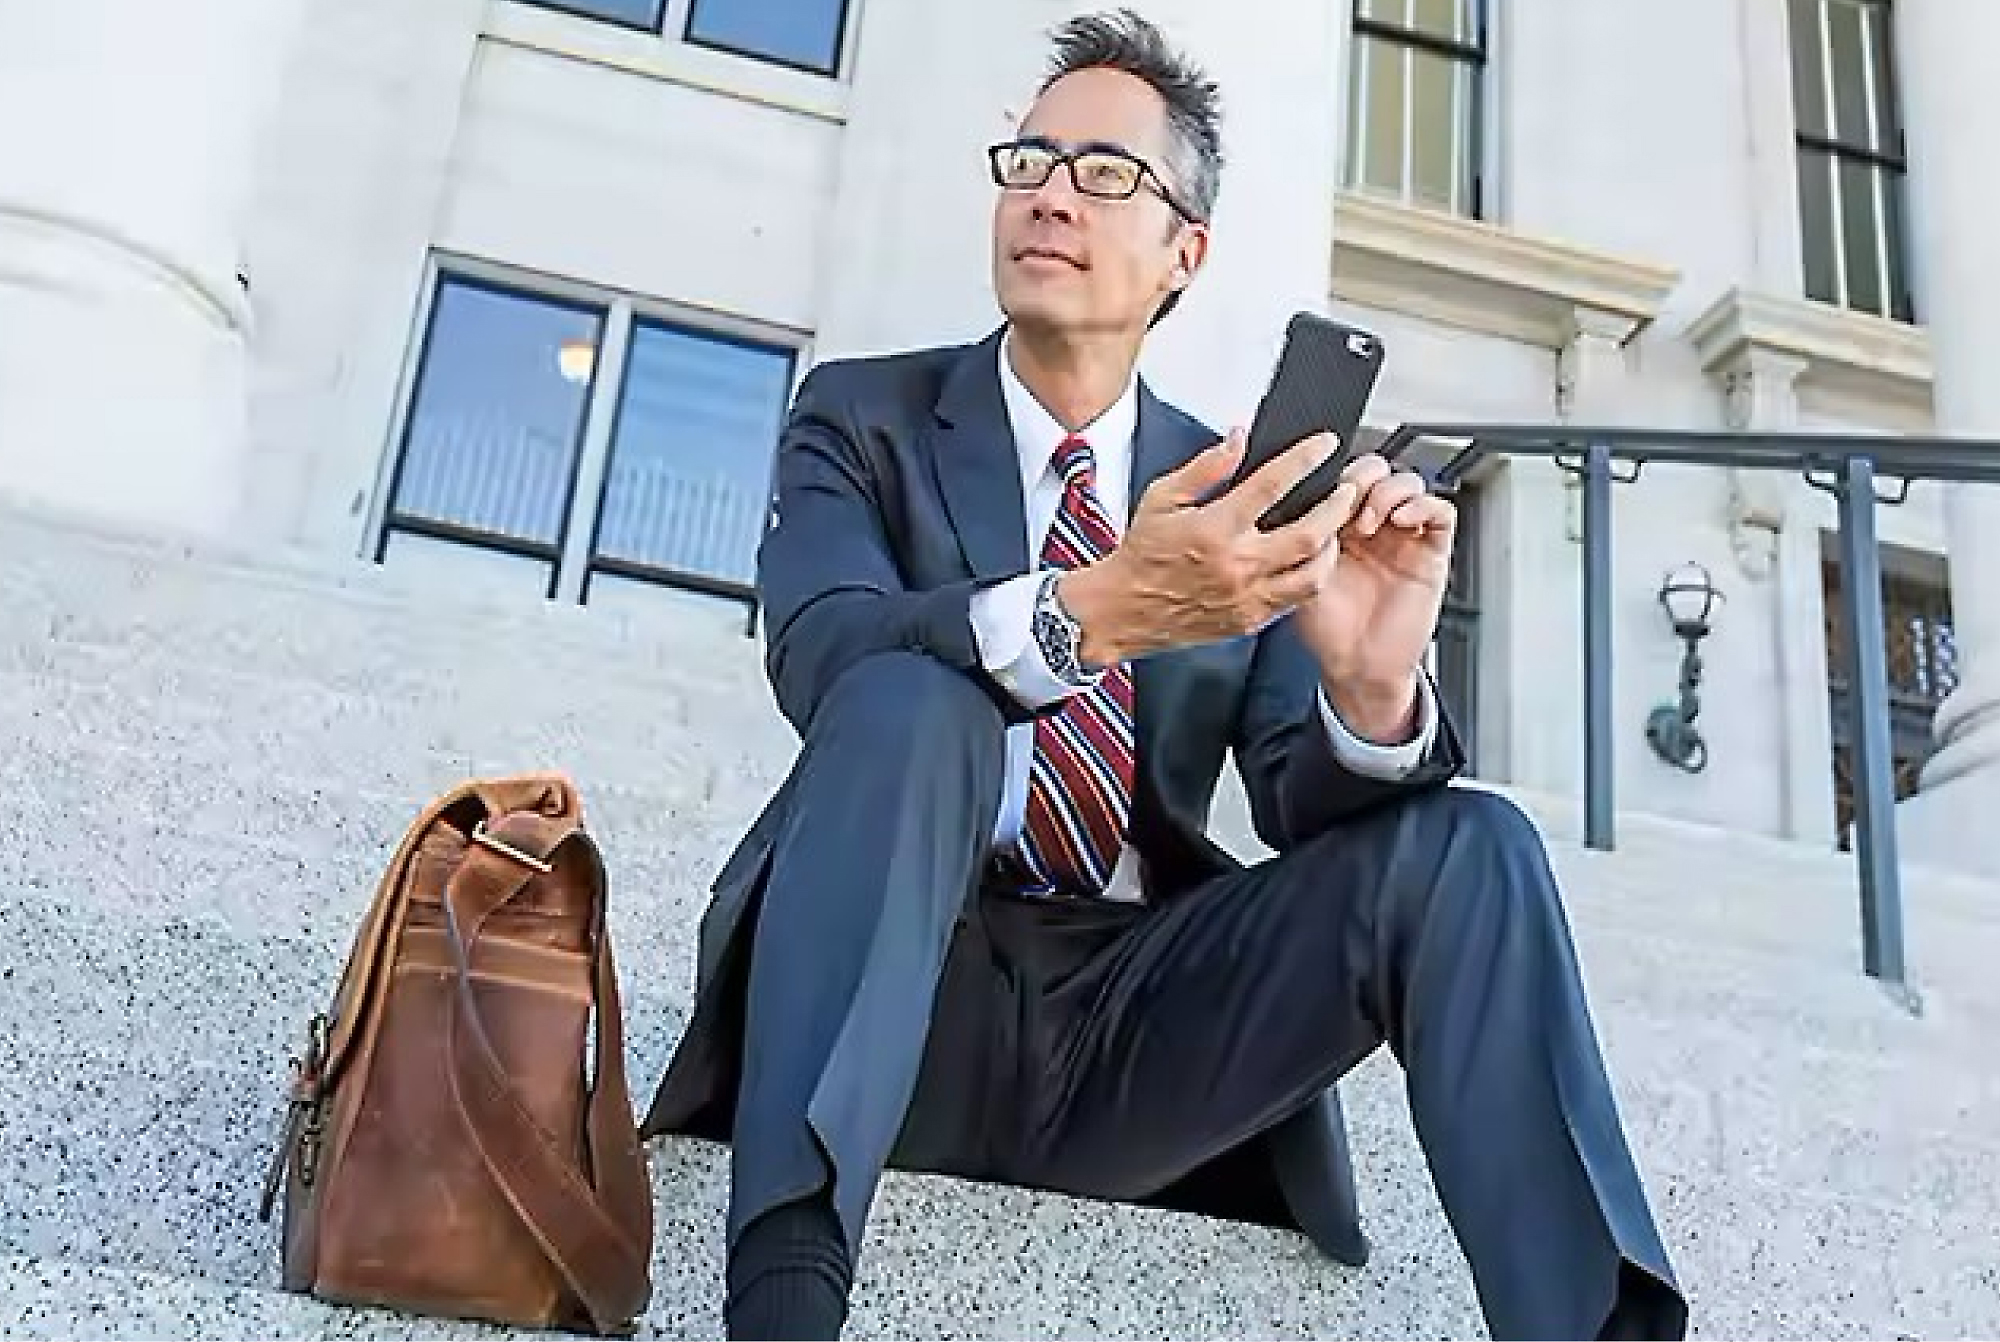 Podnikatel v obleku a brýlích sedí na schodech před budovou, používá smartphone a vedle sebe má koženou tašku.